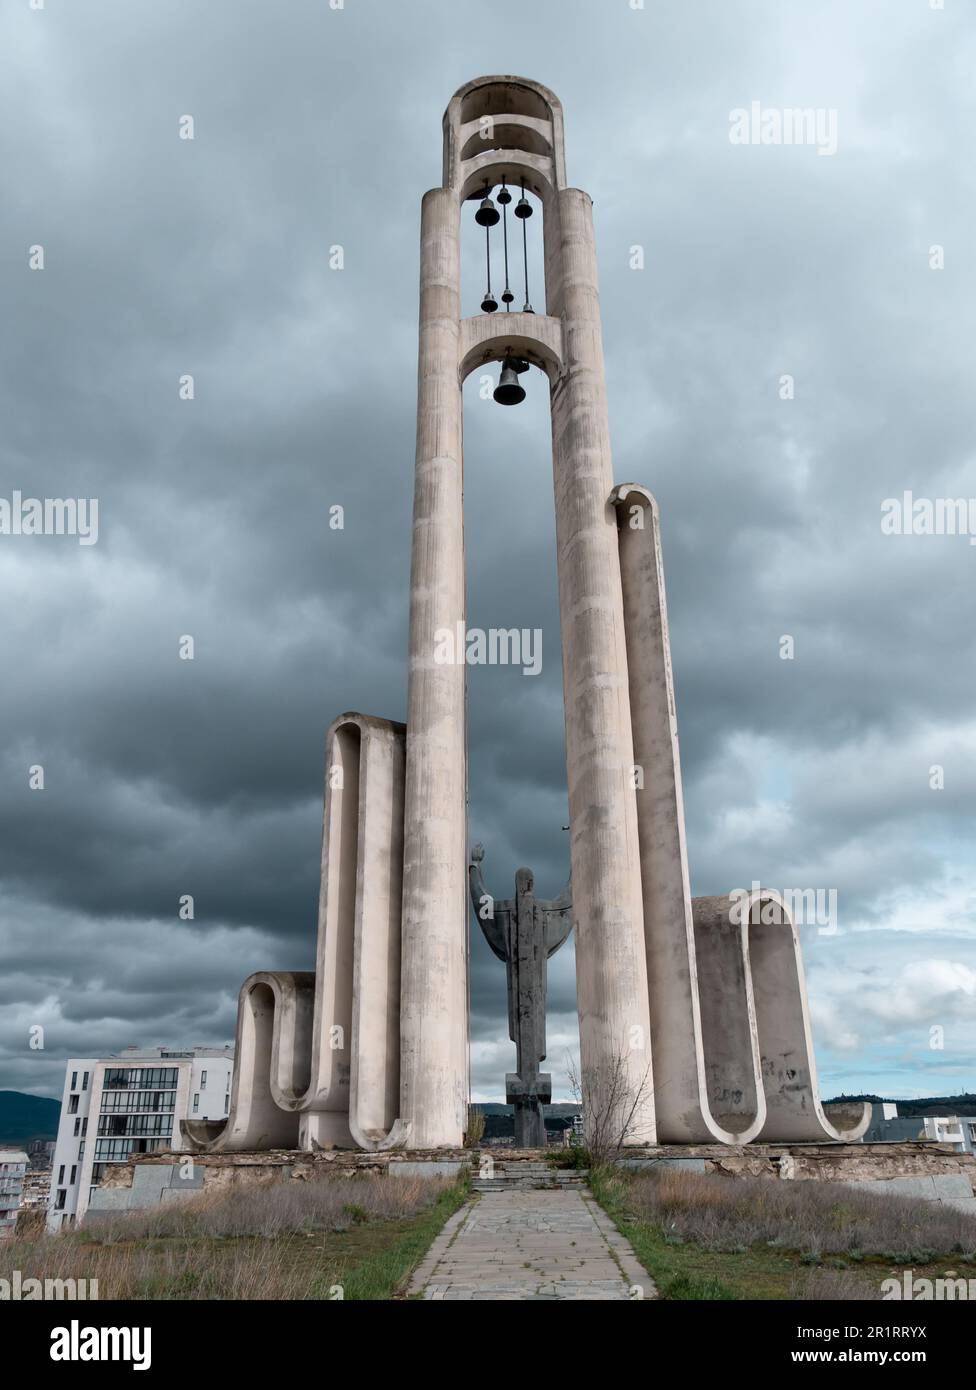 Monument de Saint Nino, Tbilissi, Géorgie, un jour de tempête - vue arrière Banque D'Images